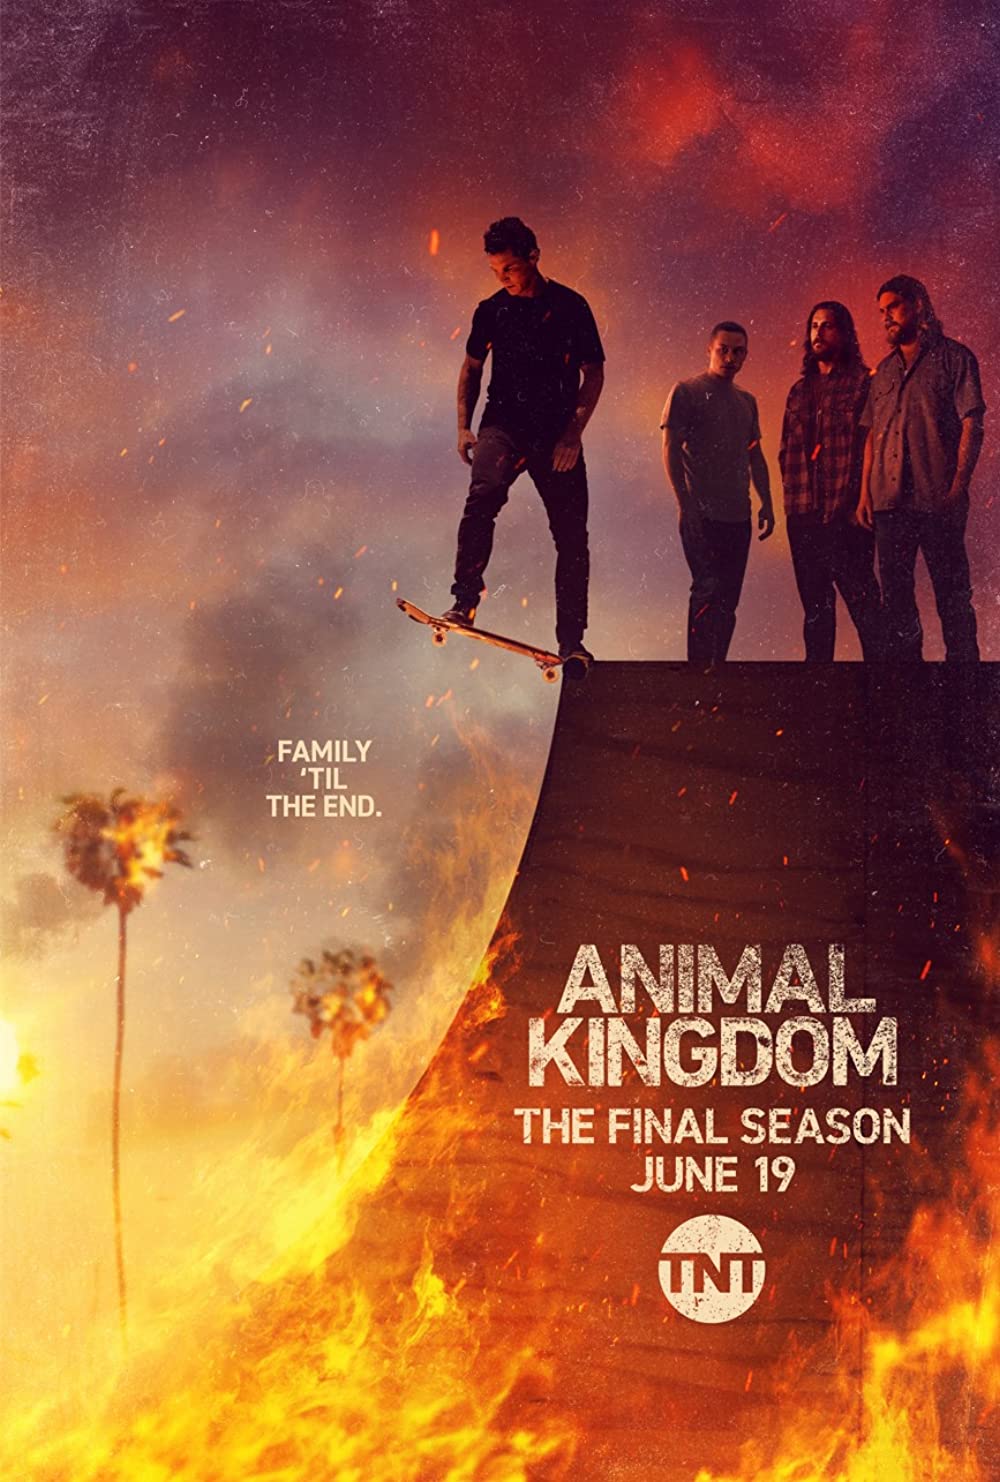 ดูหนังออนไลน์ Animal Kingdom Season 1 EP.6 แอนนิเมิล คิงด้อม ซีซั่น 1 ตอนที่ 6 (ซับไทย)